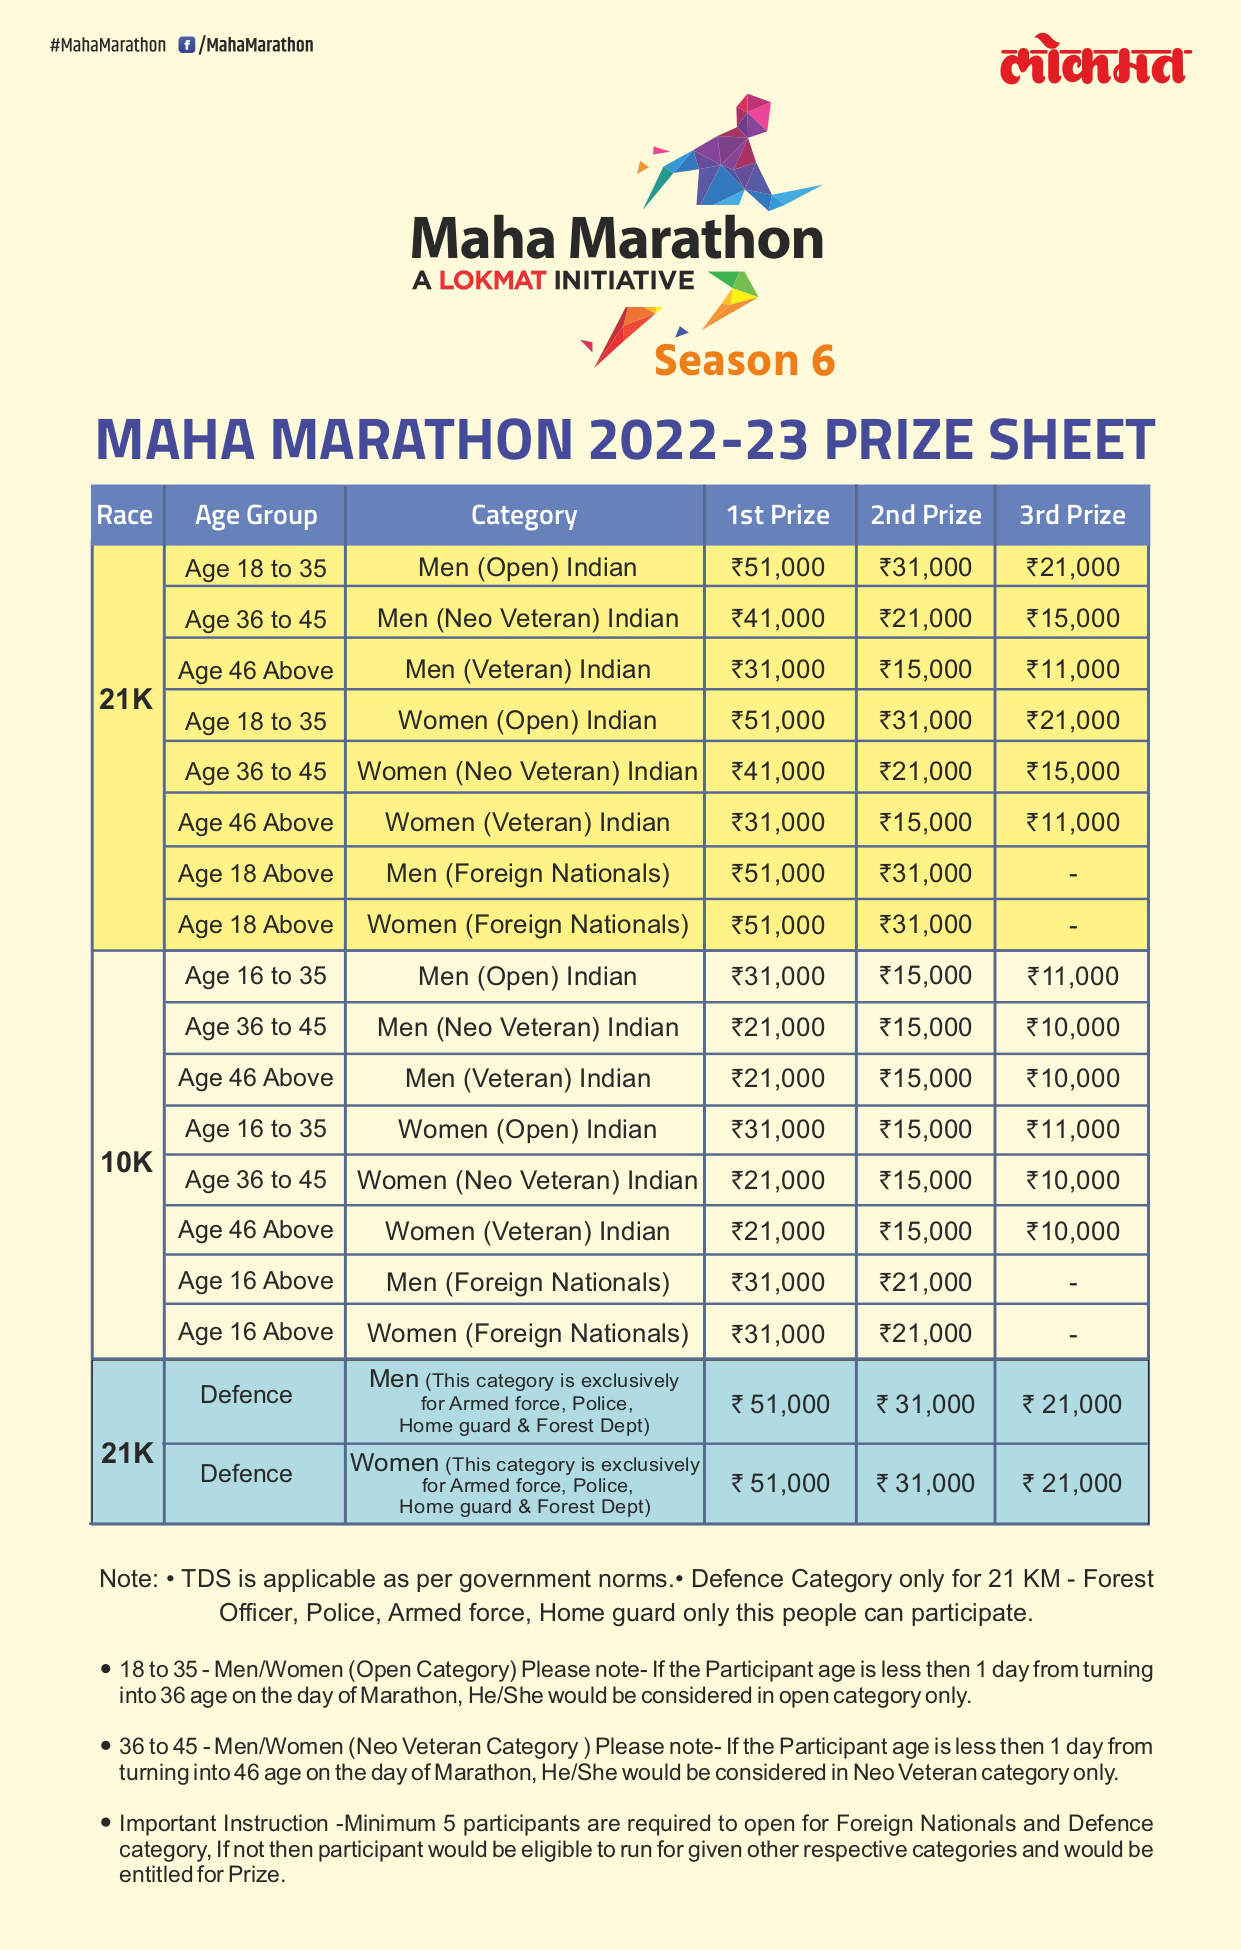 Prizes Pune Maha Marathon